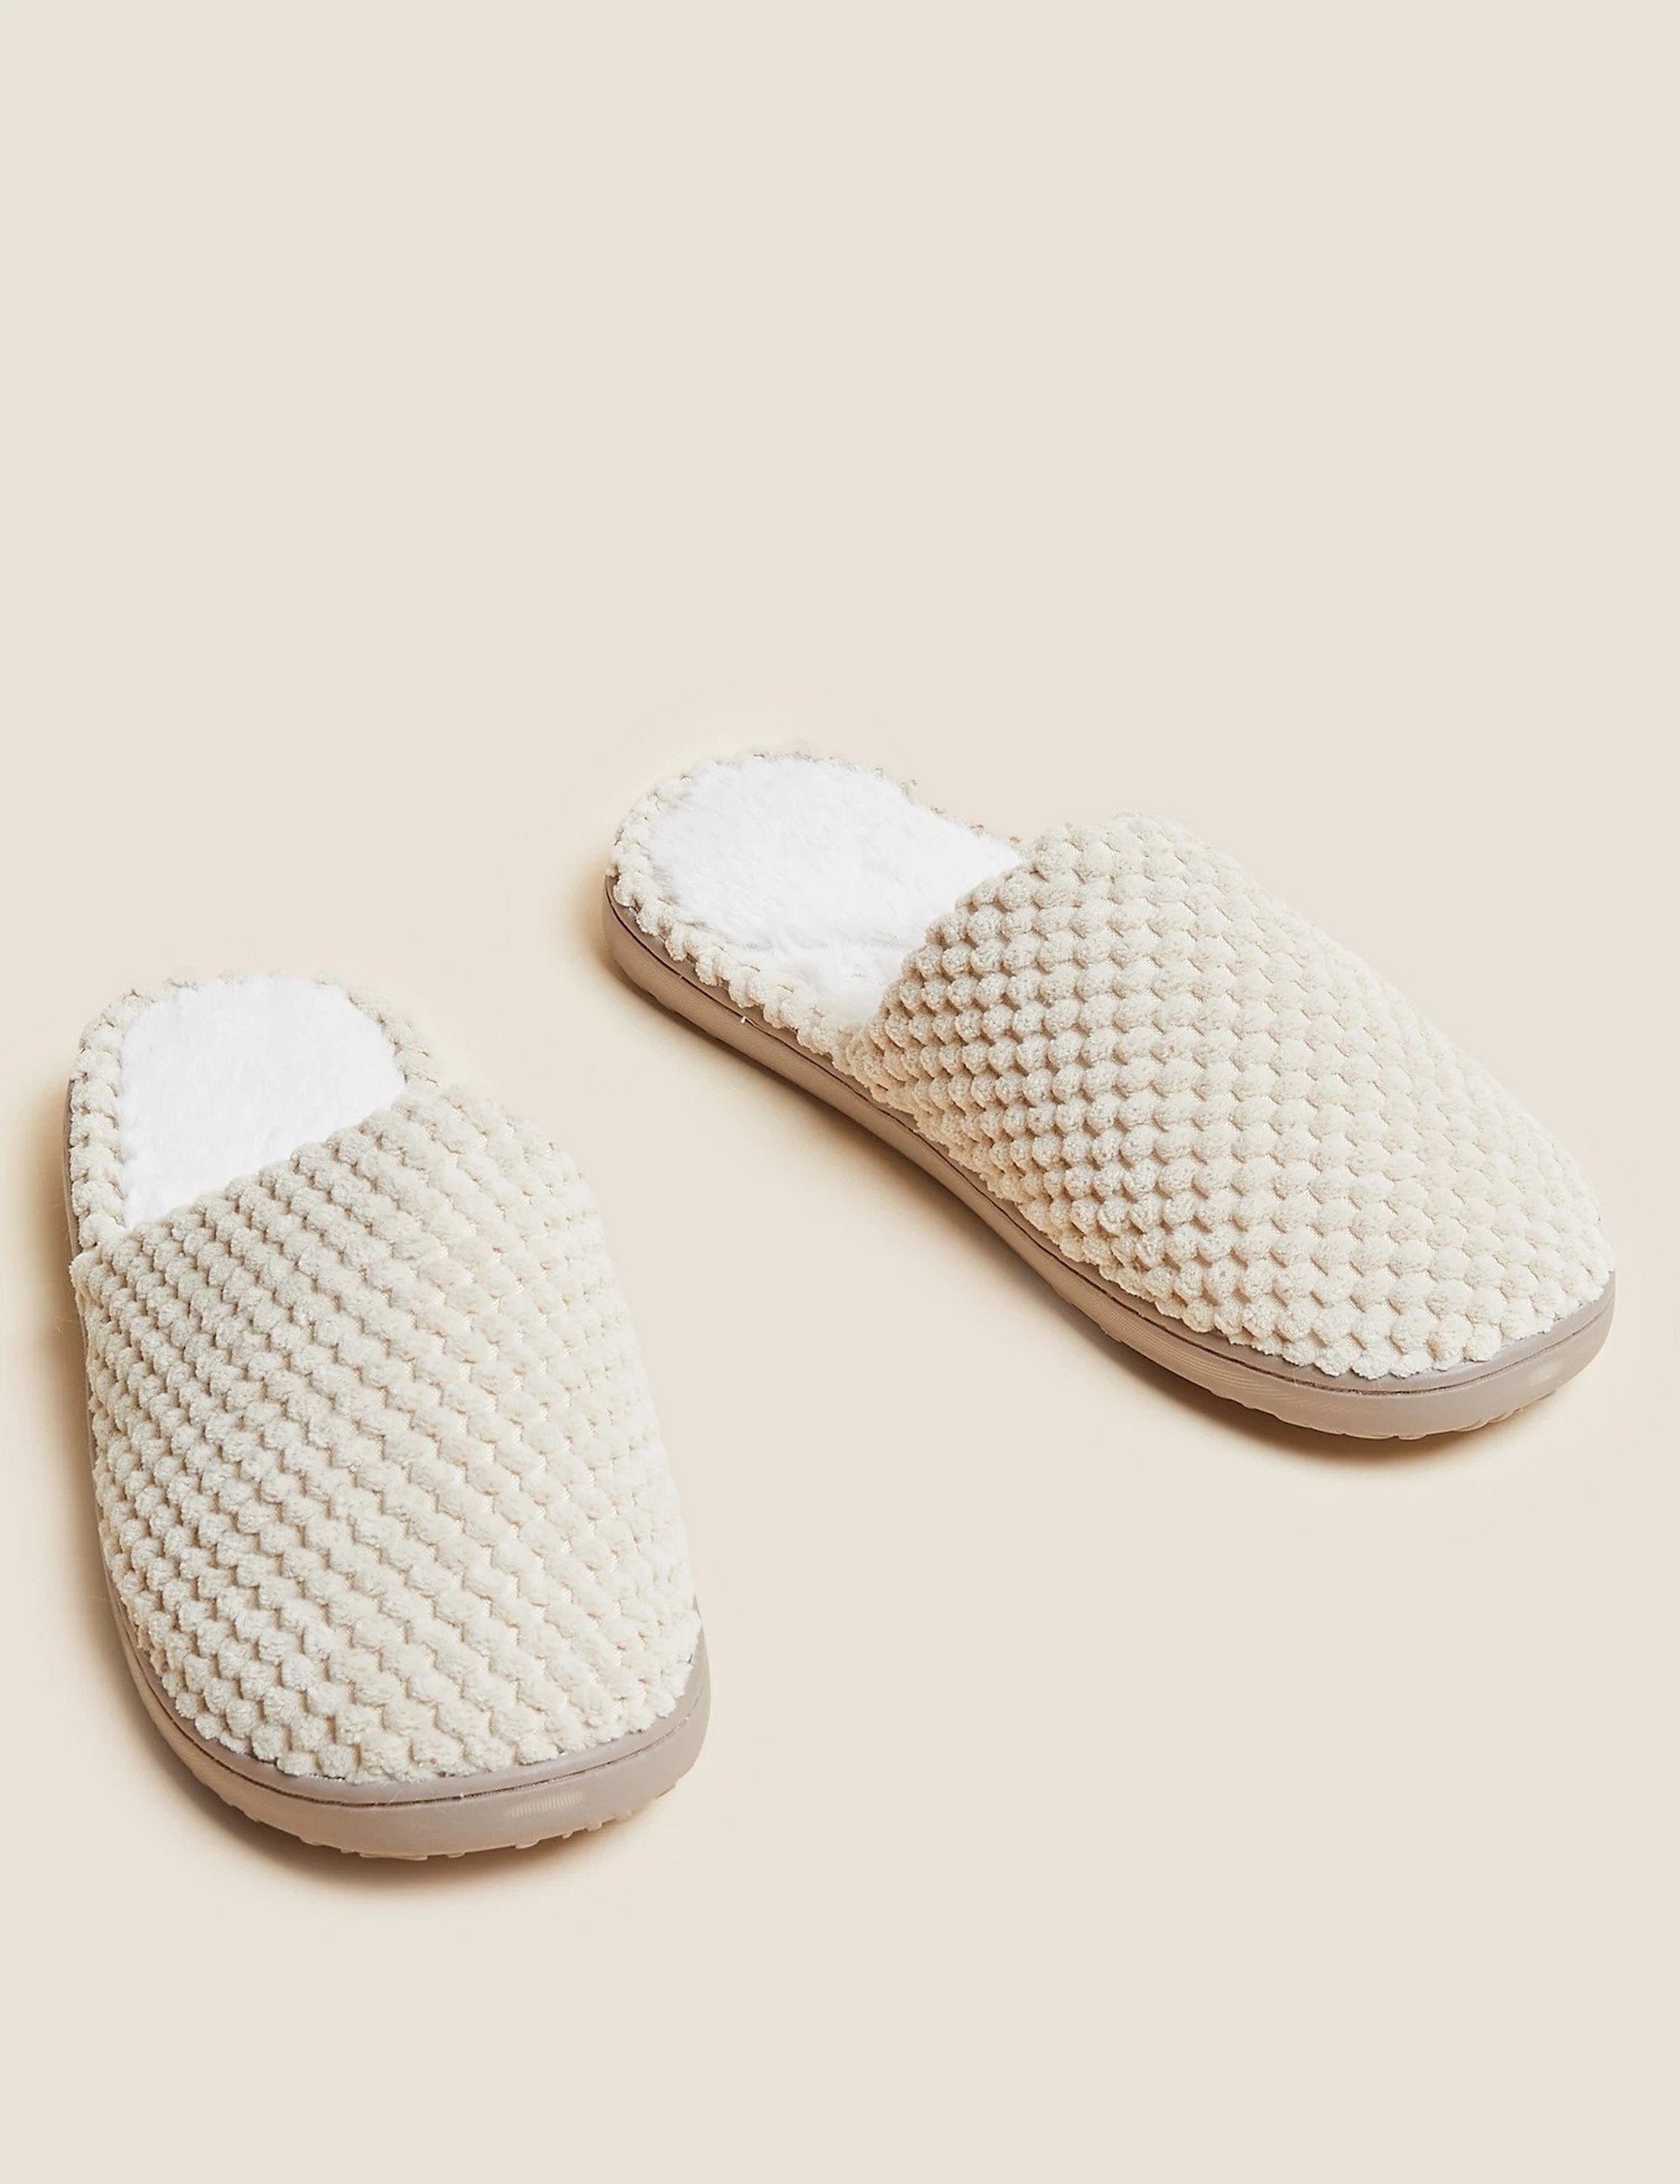 Marks & Spencer M&S men's grey Thinsulate slipon adjustable slippers size 8  BNWT | eBay